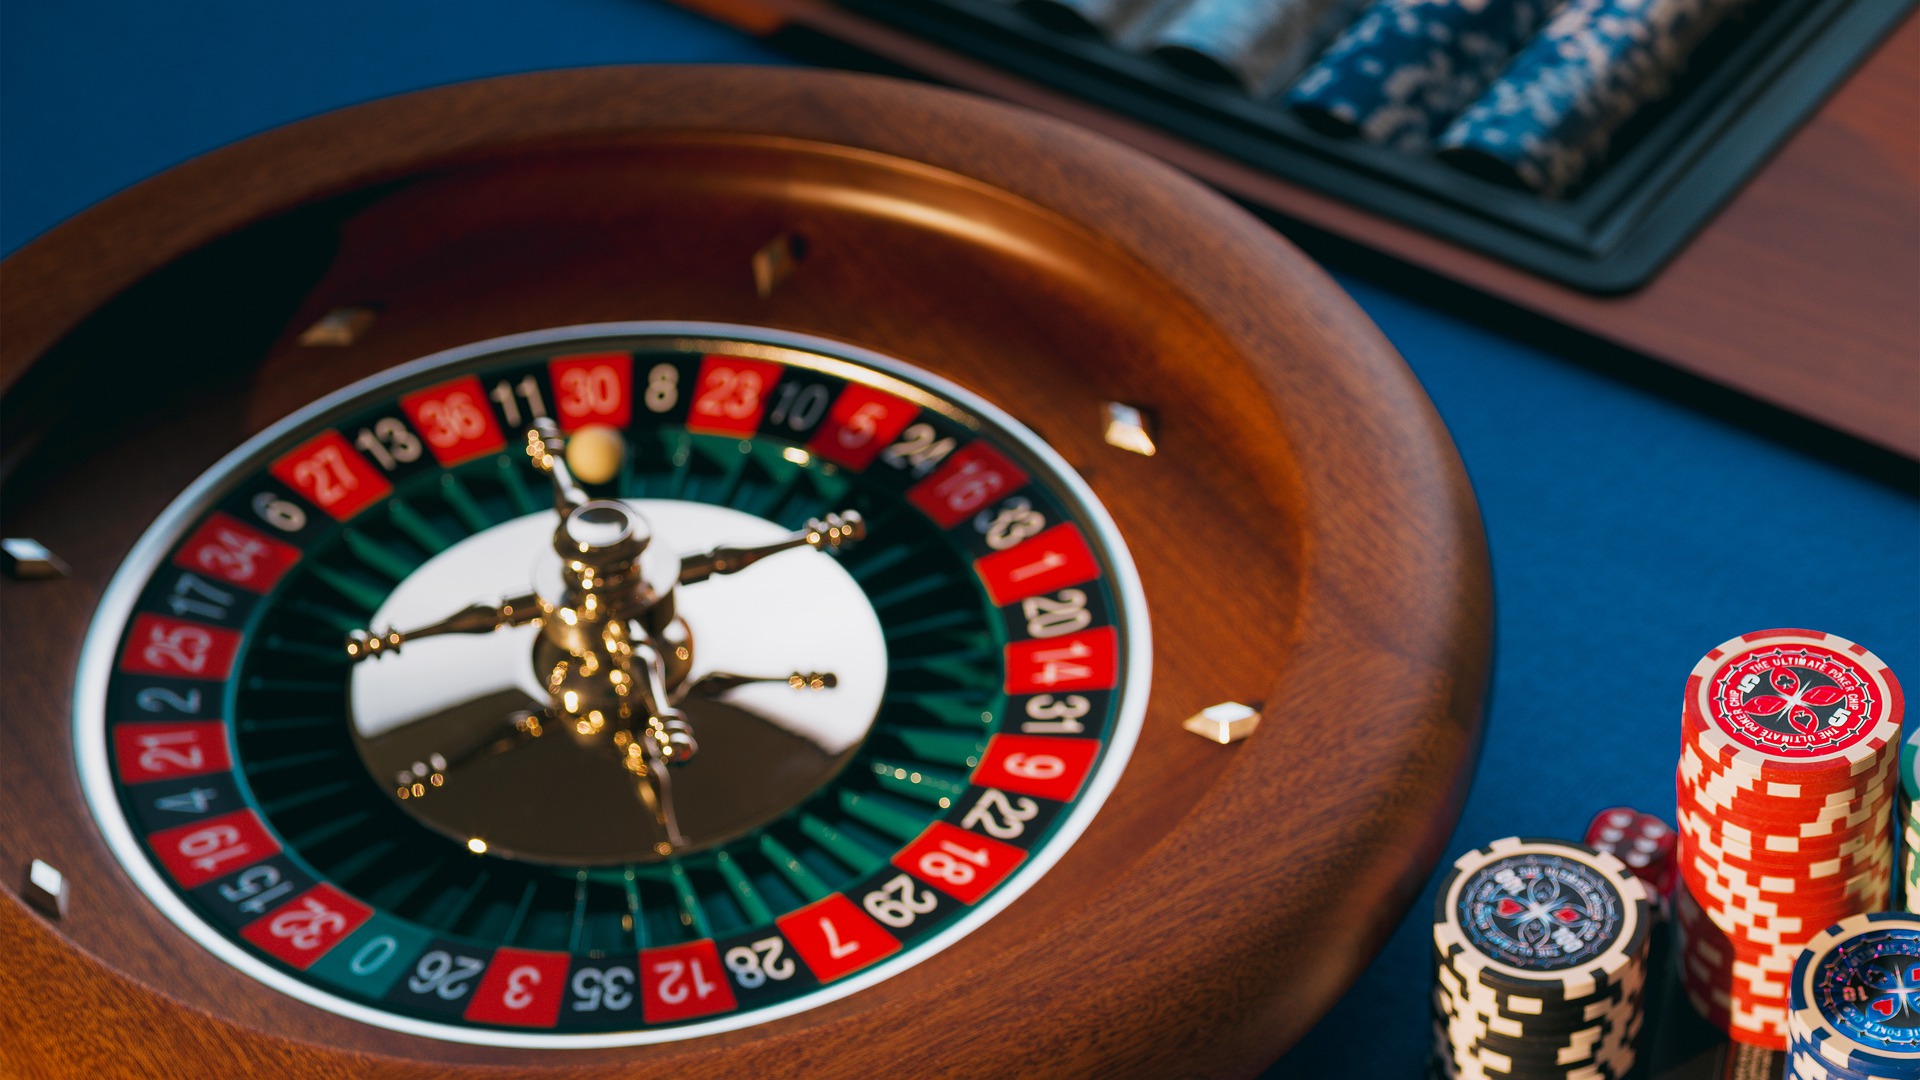 beste online casinos österreich überprüft: Was kann man aus den Fehlern anderer lernen?